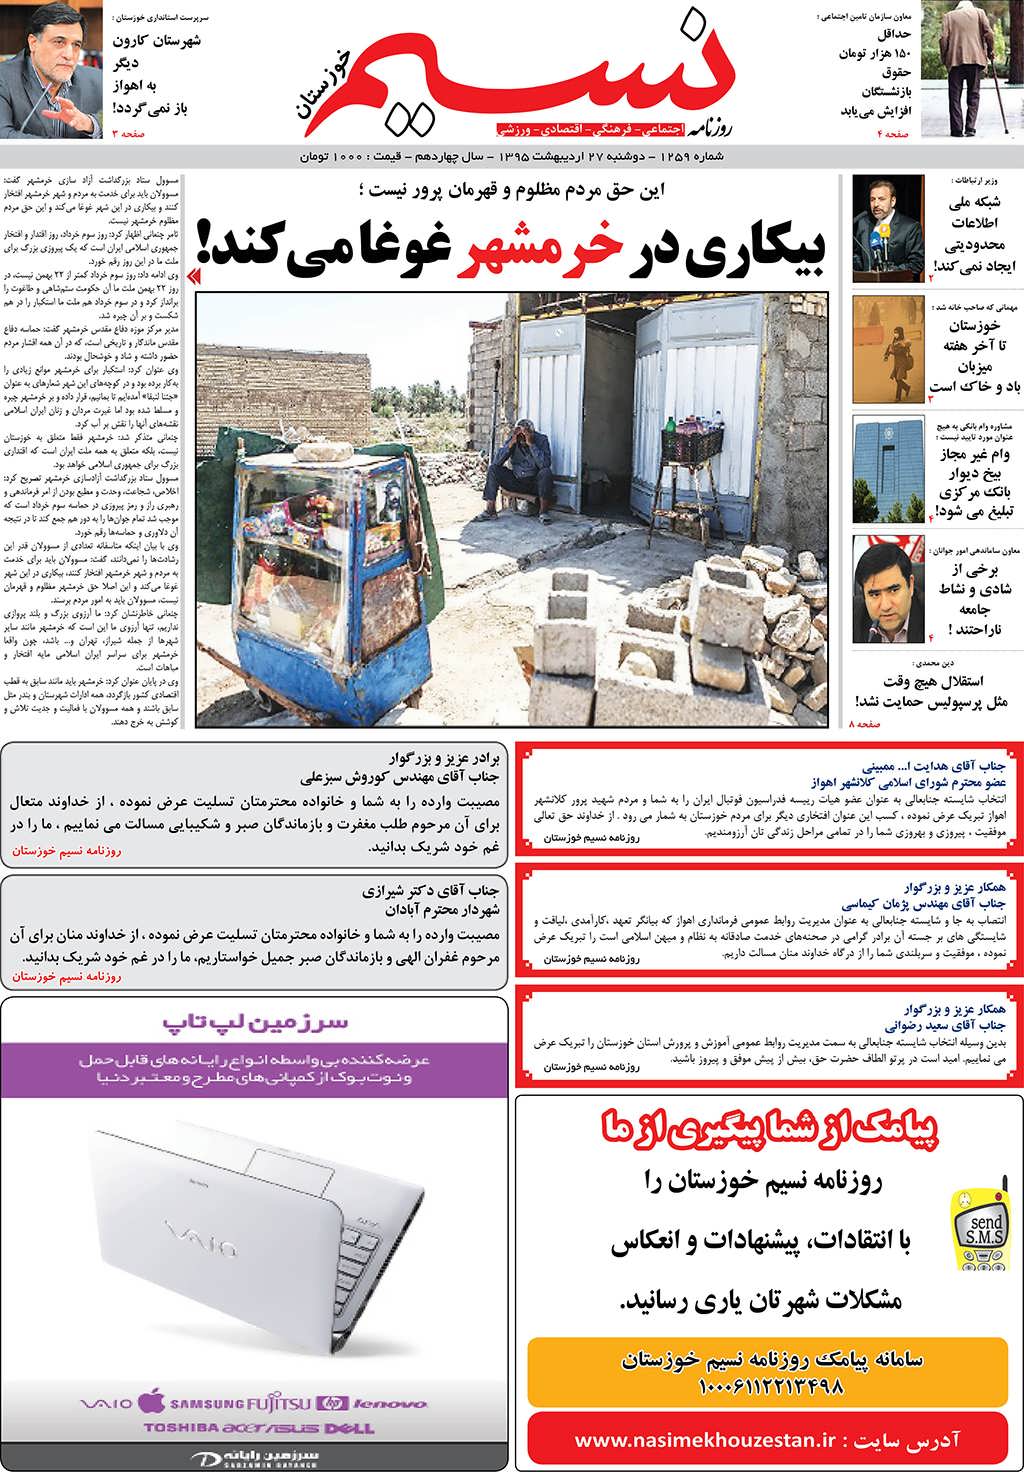 صفحه اصلی روزنامه نسیم شماره 1259